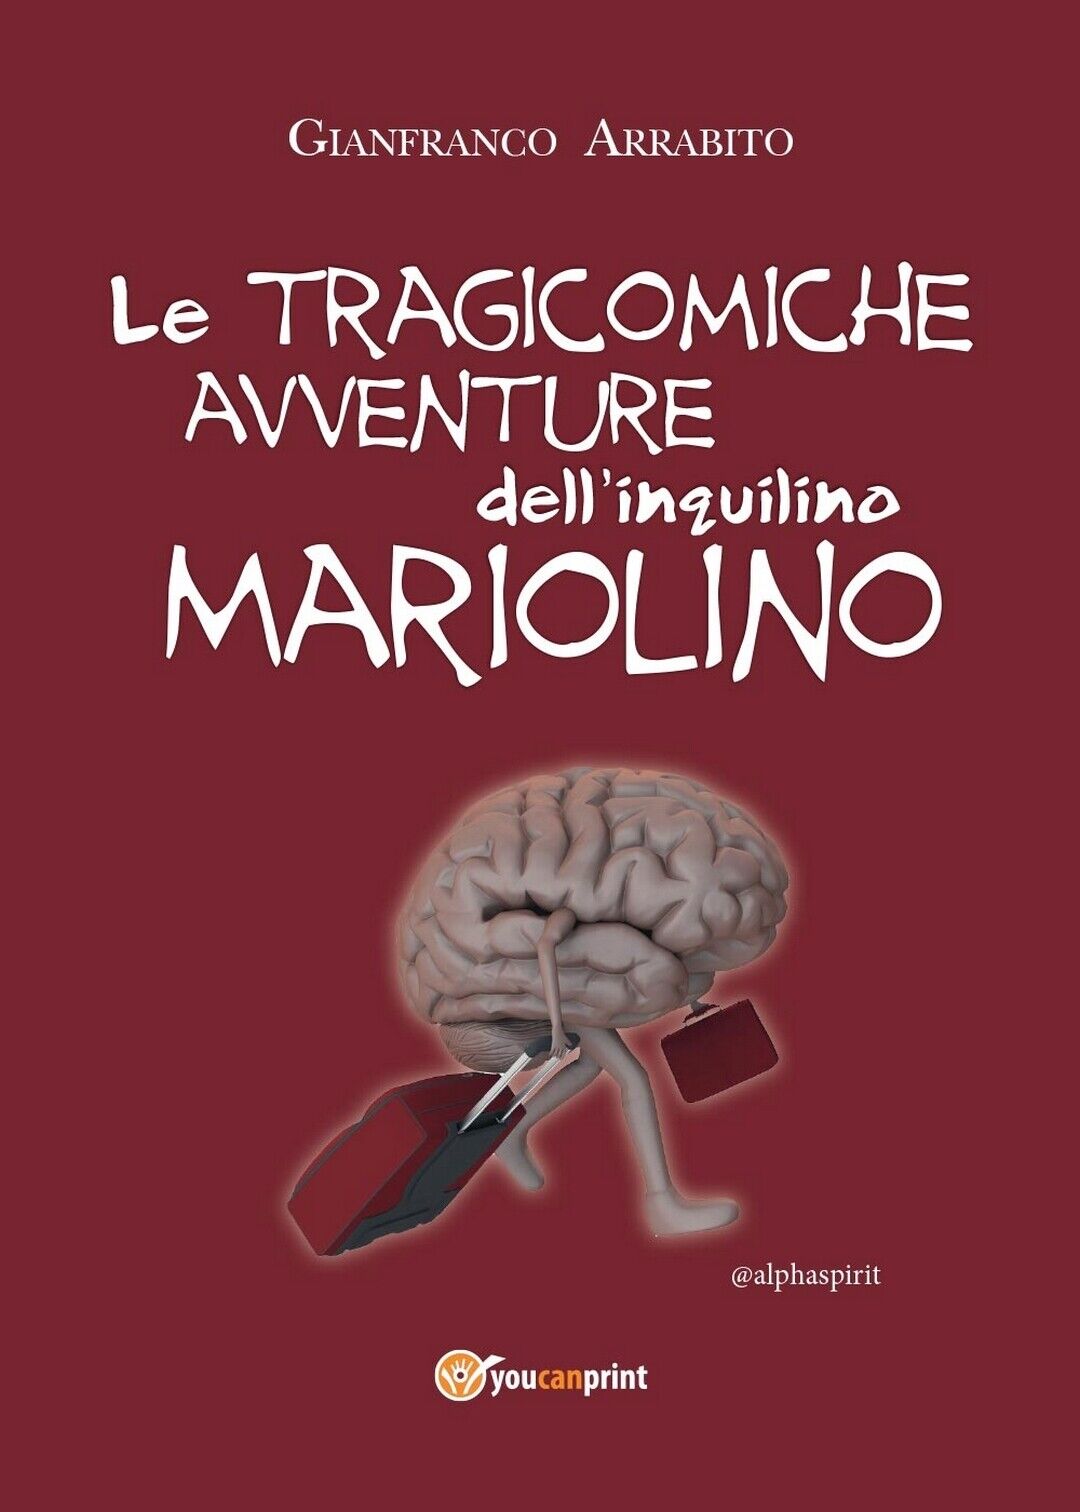 Le tragicomiche avventure delL'inquilino Mariolino, Gianfranco Arrabito,  2016